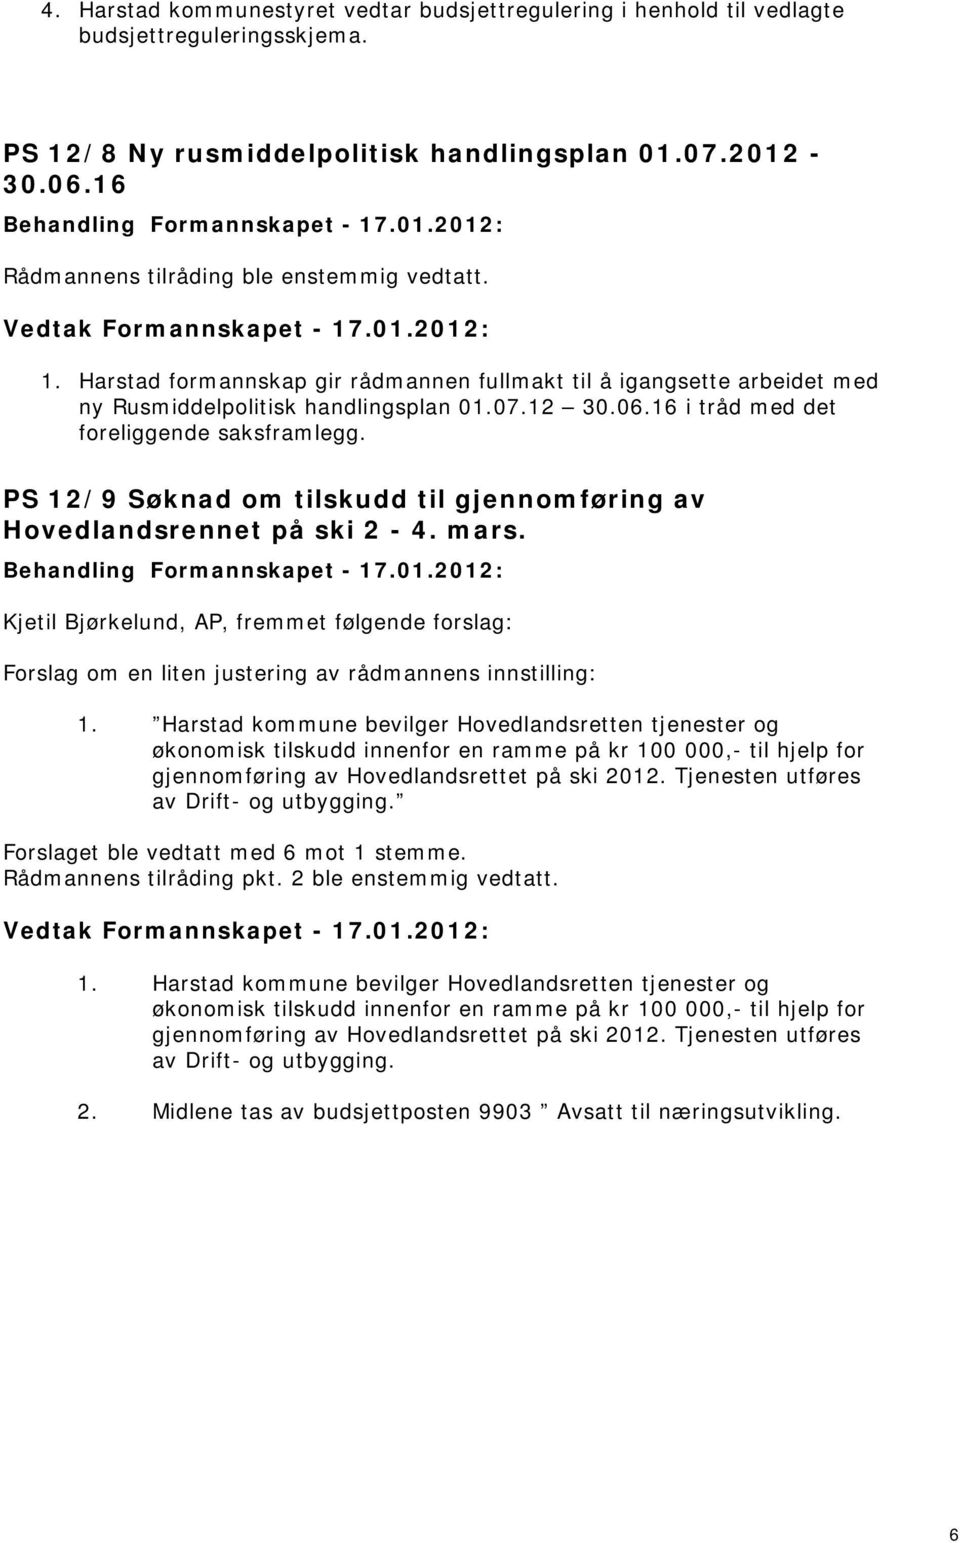 PS 12/9 Søknad om tilskudd til gjennomføring av Hovedlandsrennet på ski 2-4. mars. Kjetil Bjørkelund, AP, fremmet følgende forslag: Forslag om en liten justering av rådmannens innstilling: 1.